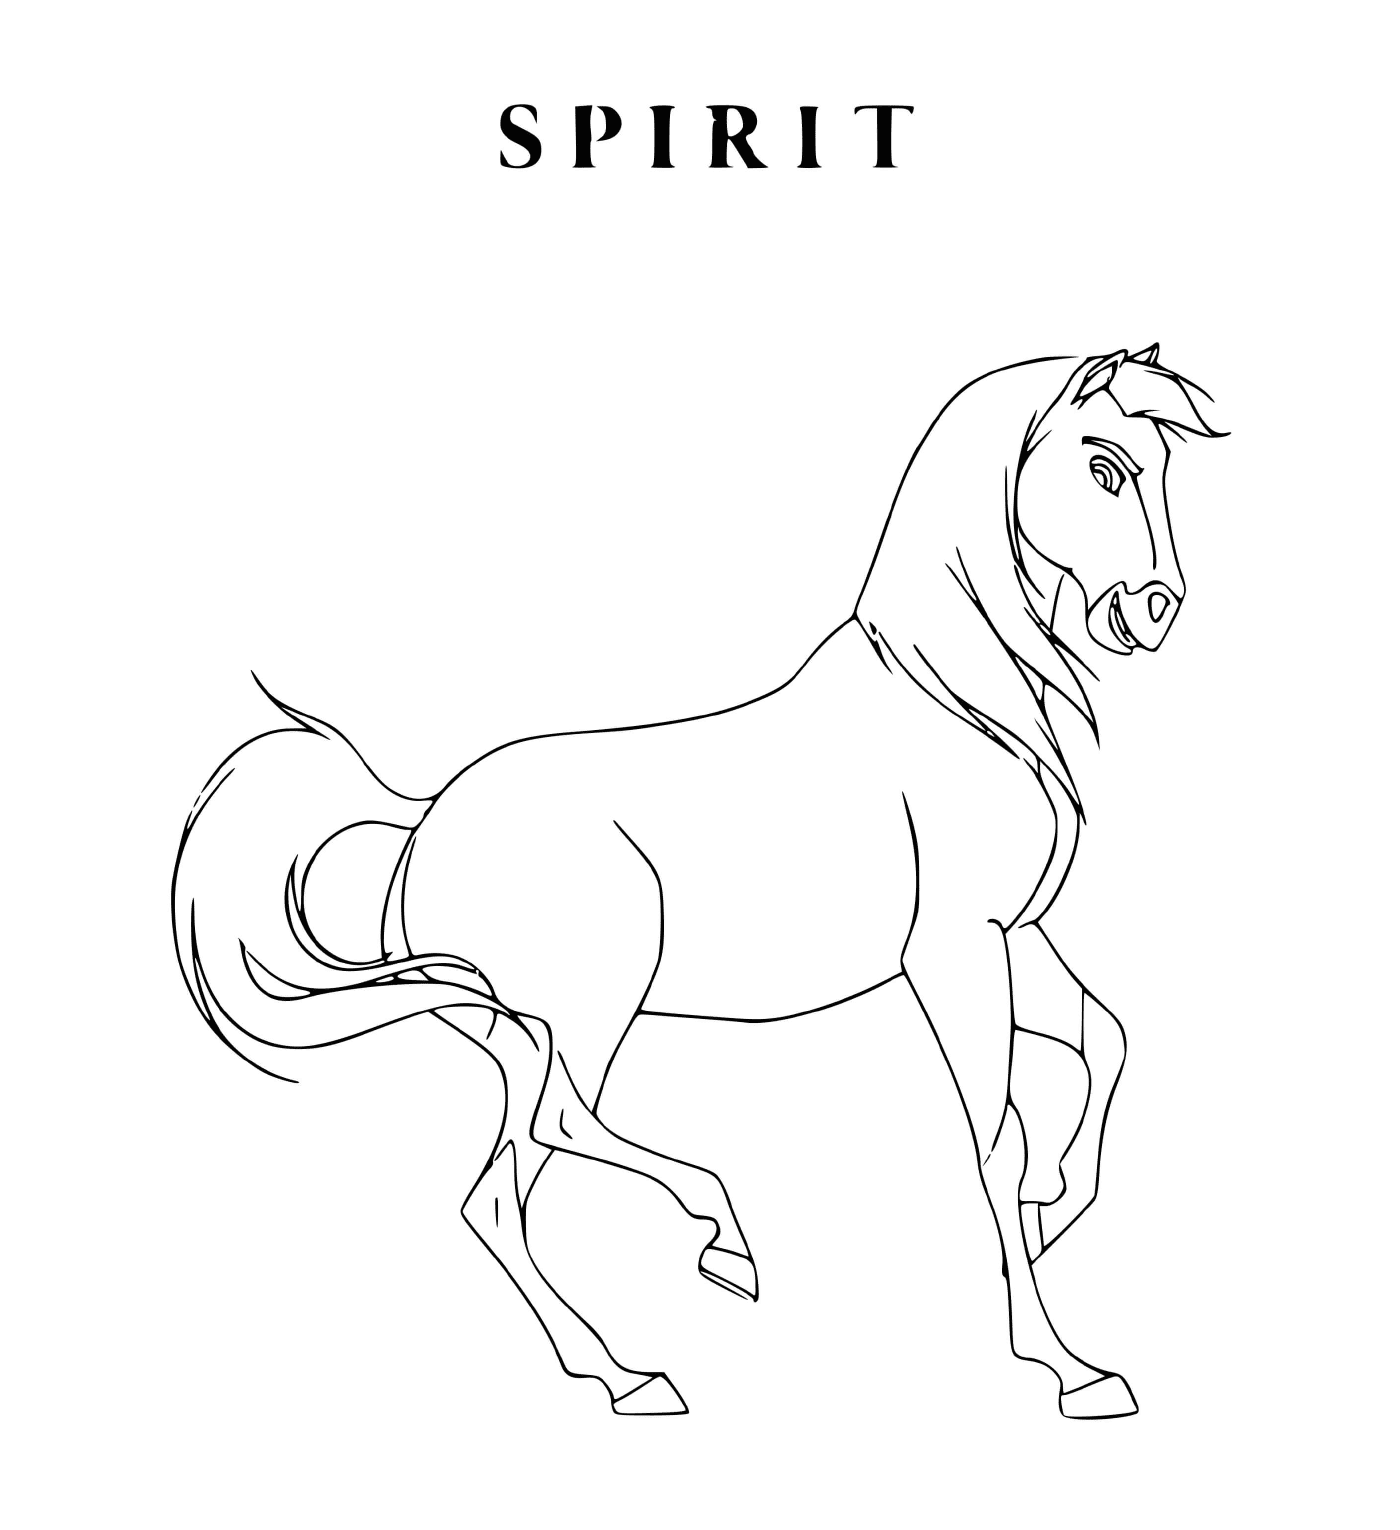  Spirit, plains standard (filme de animação) 